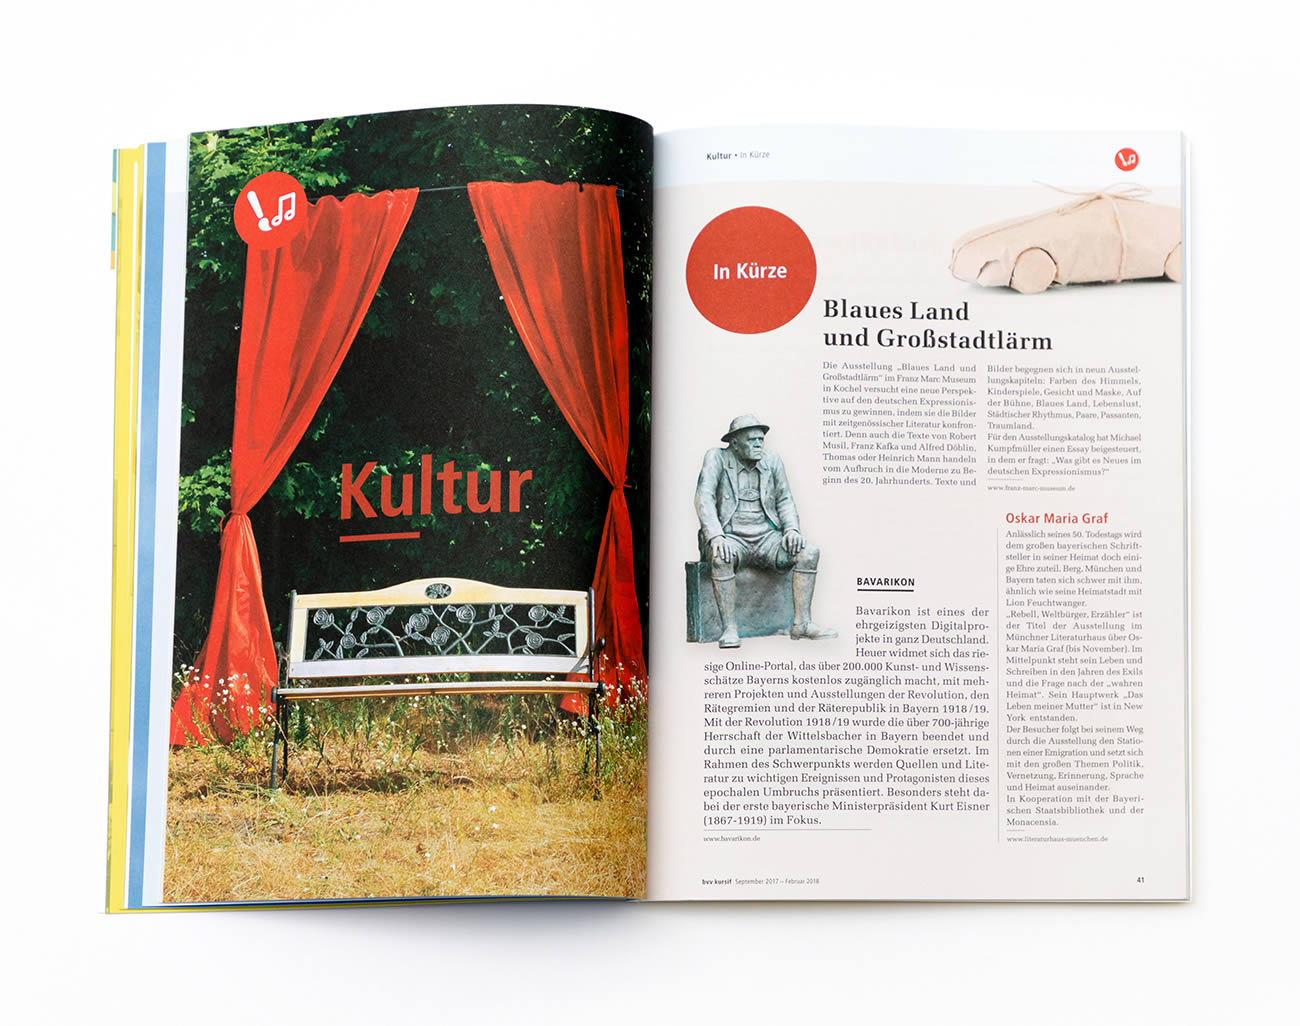 Petra Zimmerer, Büro für Gestaltung, Editorial, Kursif Magazin, Bayerischer Volkshochschulverband, Design by pz